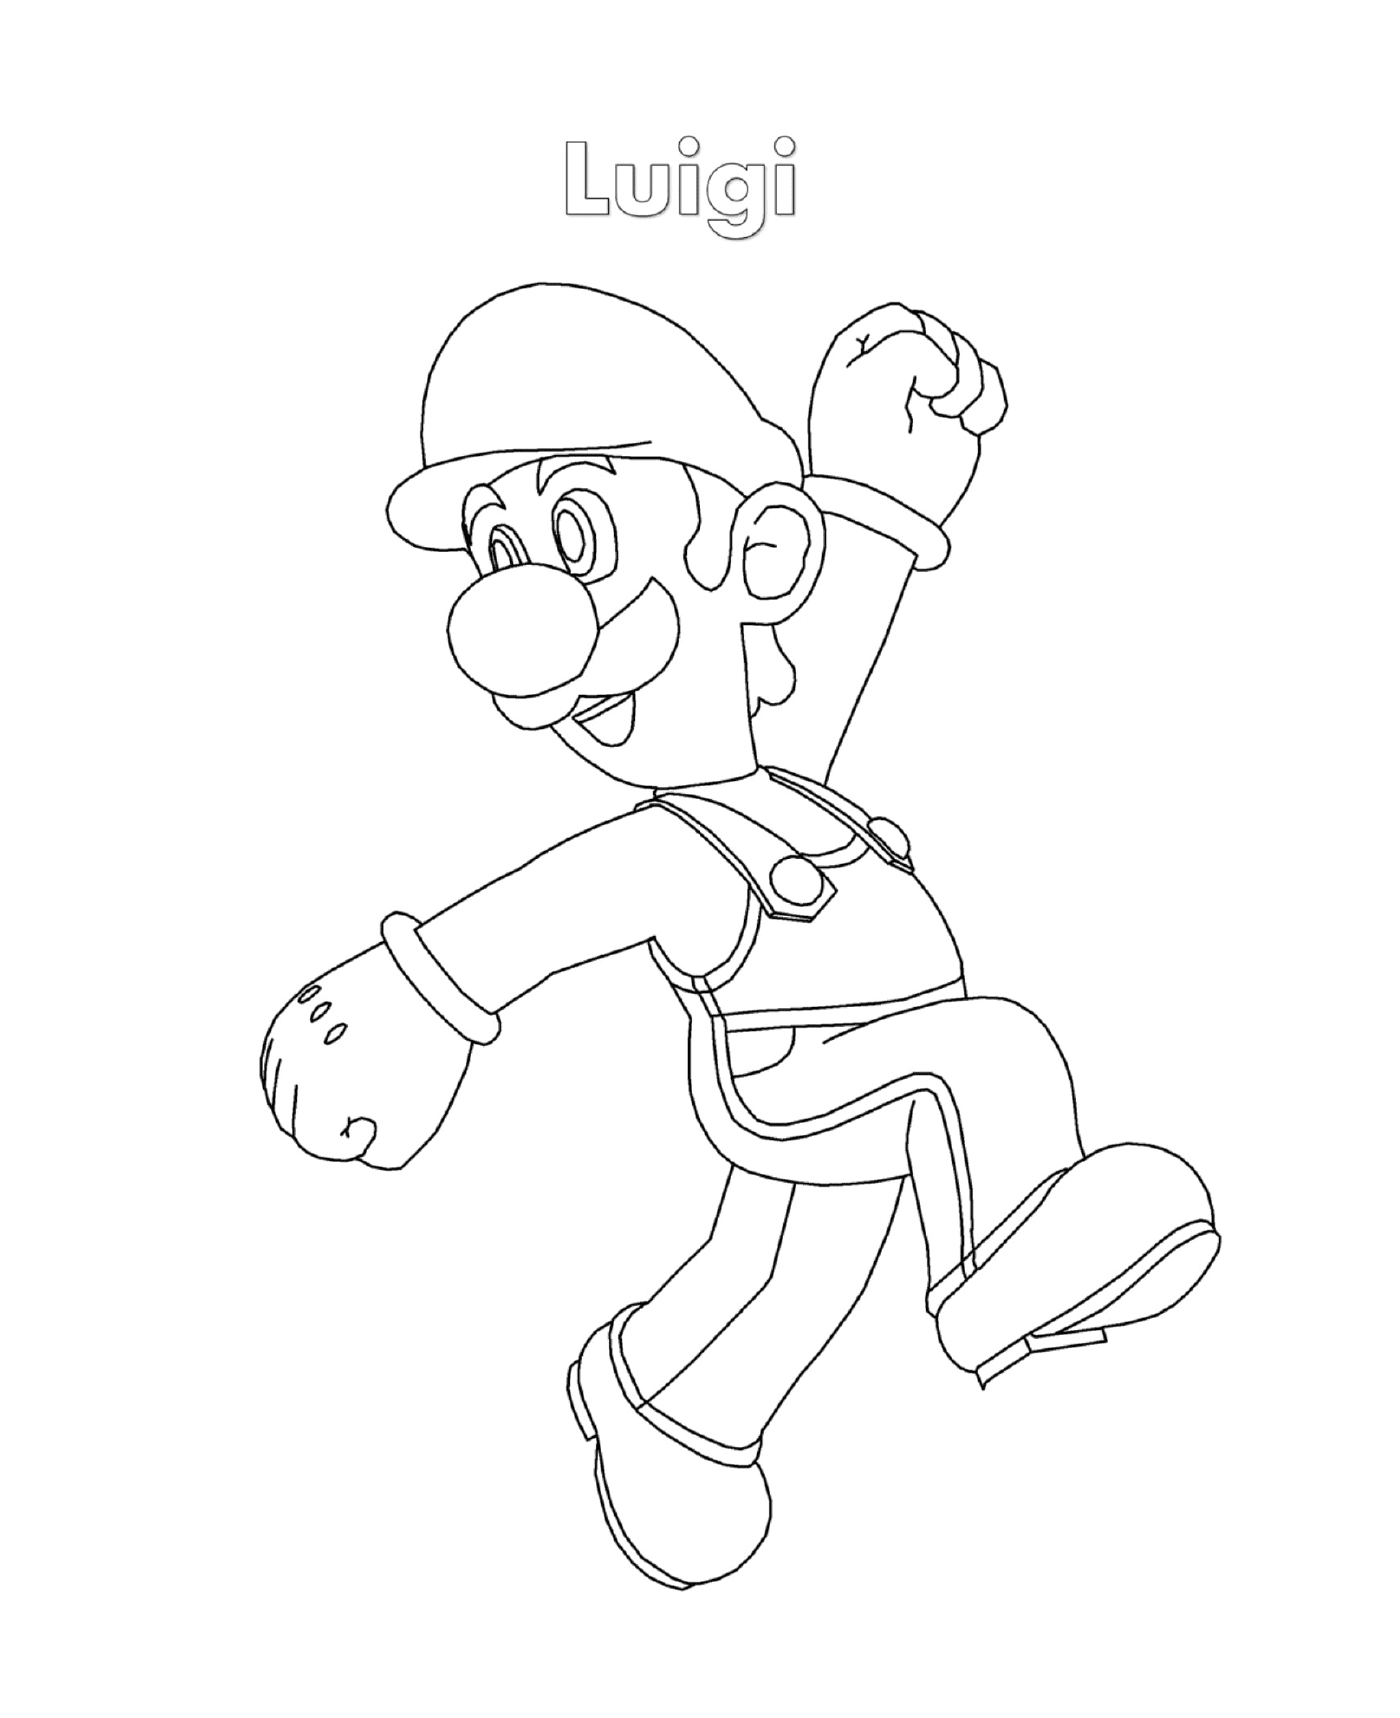  来自超级马里奥的Luigi, 一个人在奔跑 